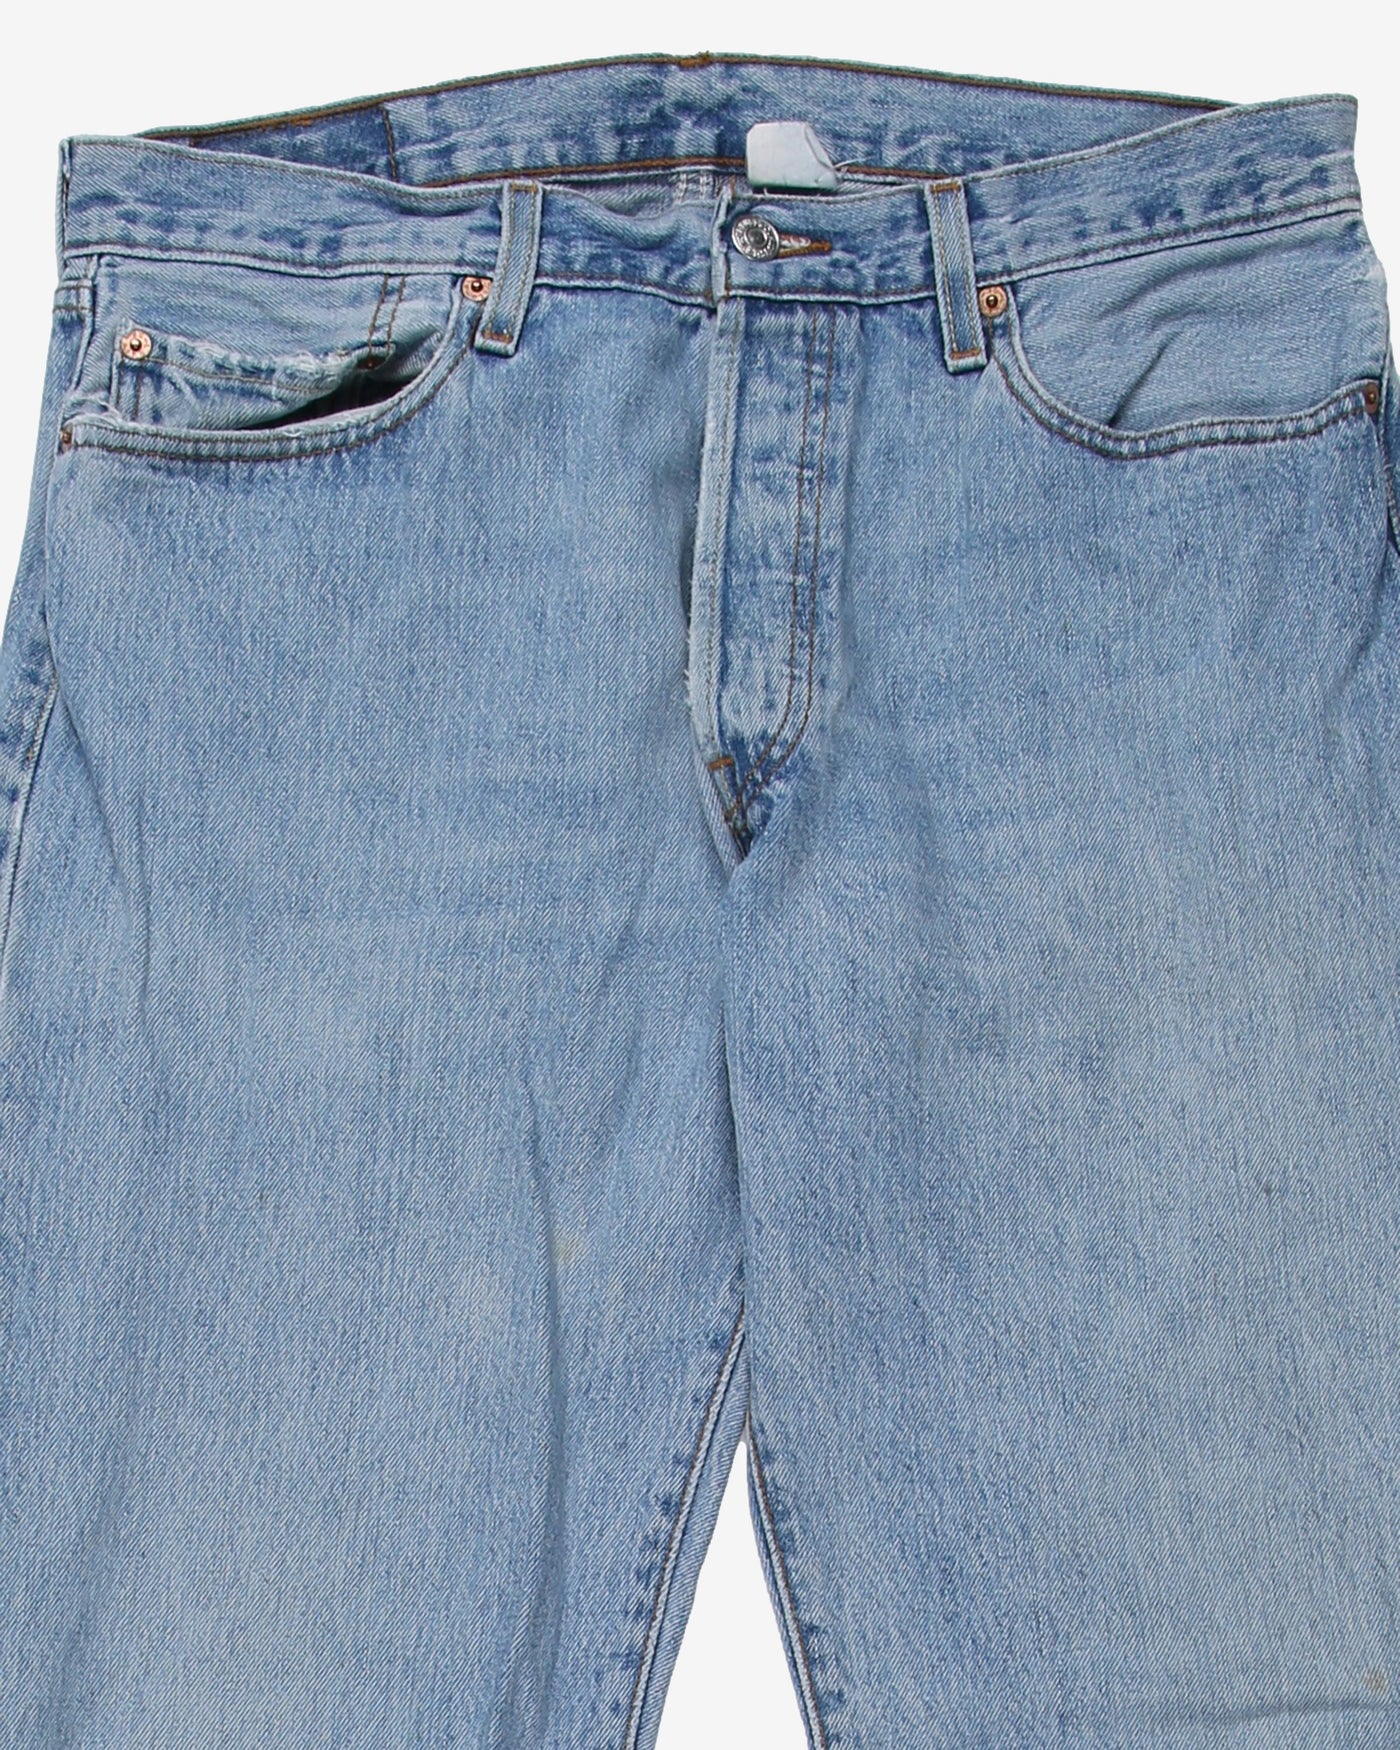 Vintage Levi's 501 Denim Light Blue Jeans - W33 L28